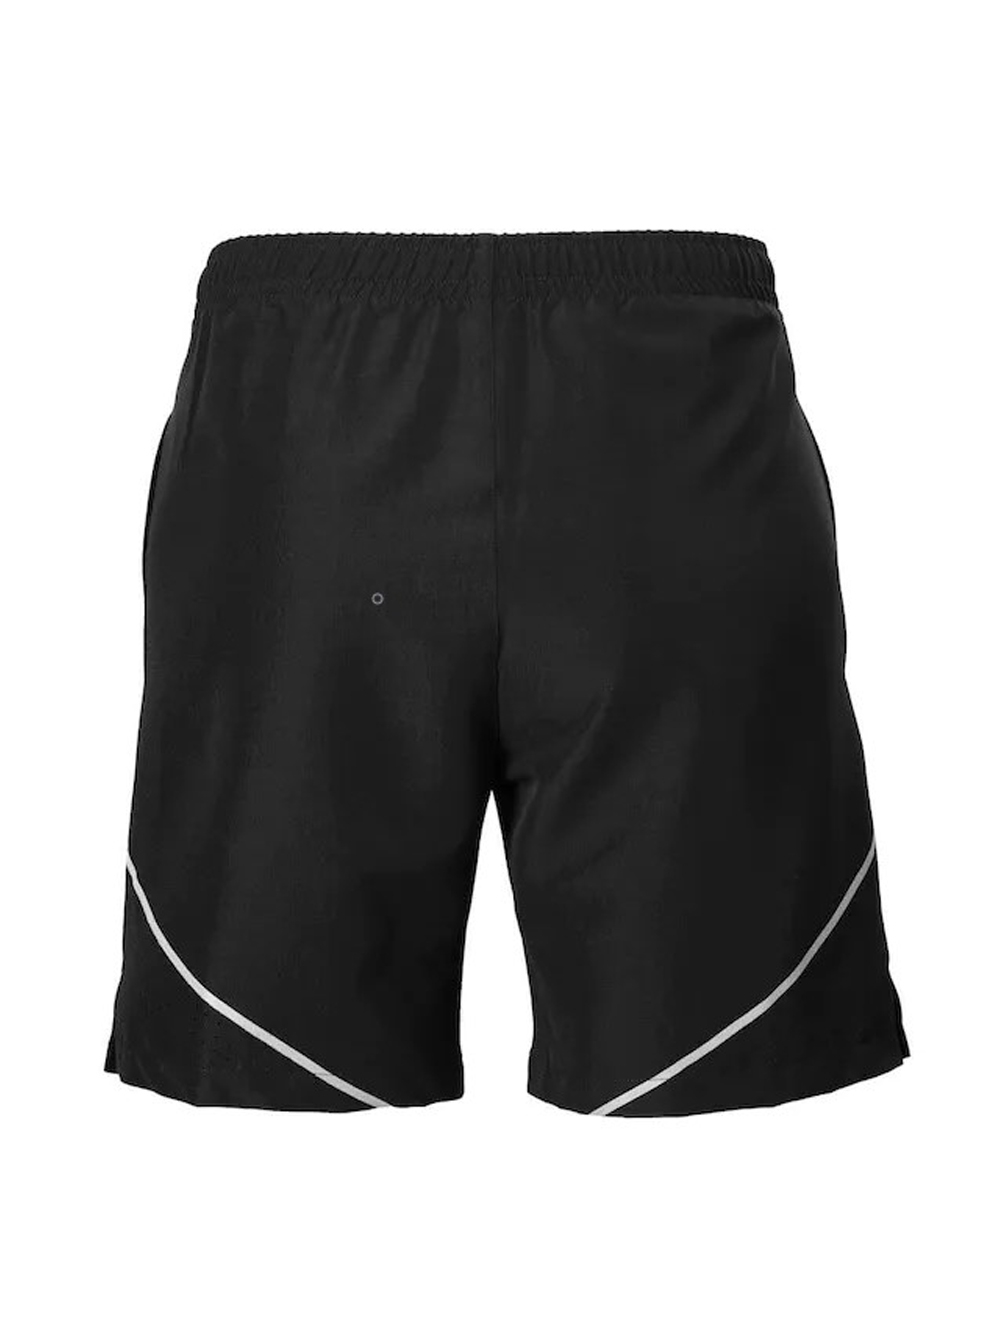 Shorts Pro